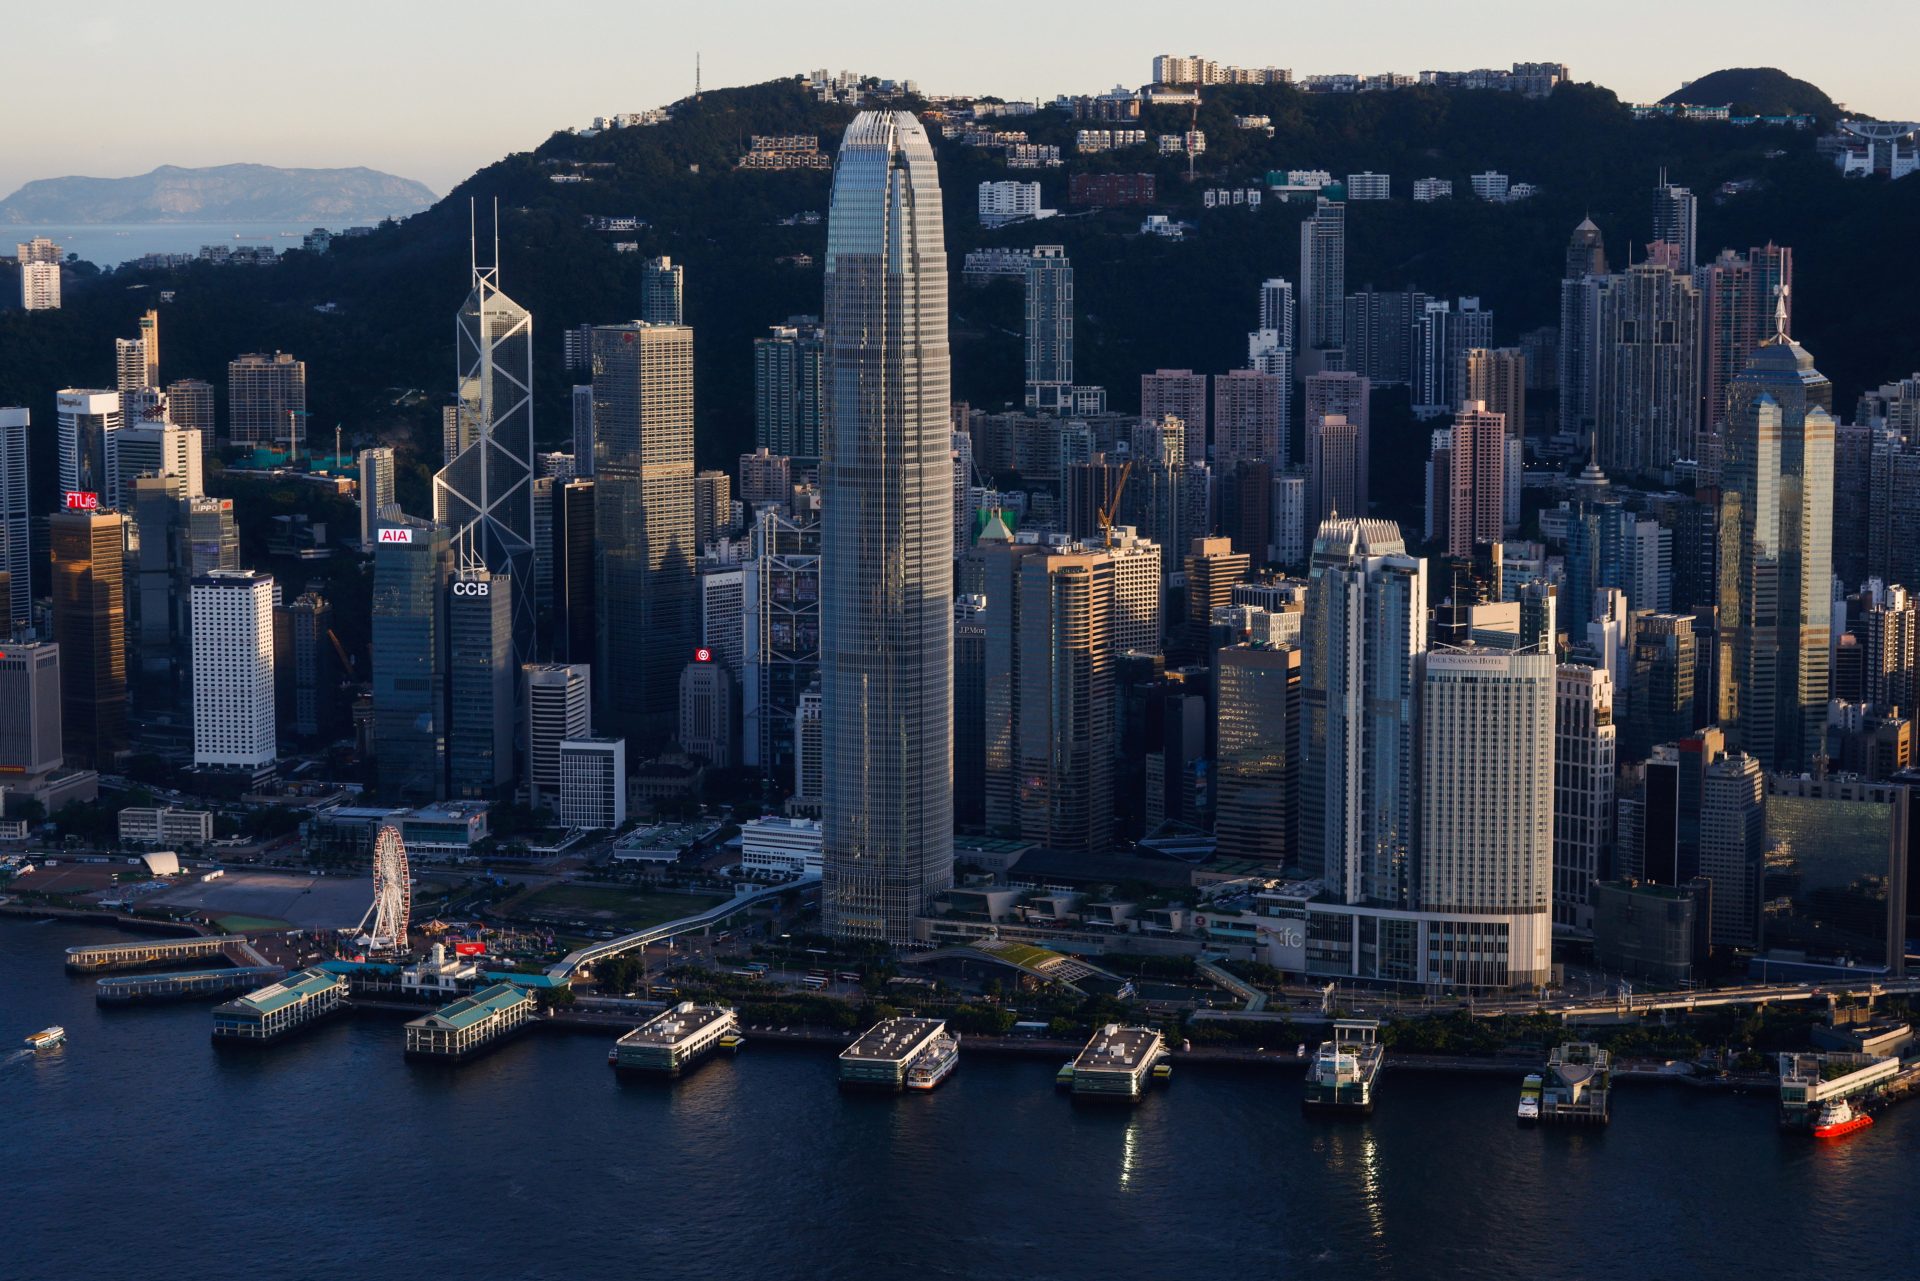 Le Wall Street Journal réduit son personnel à Hong Kong et se tourne vers Singapour